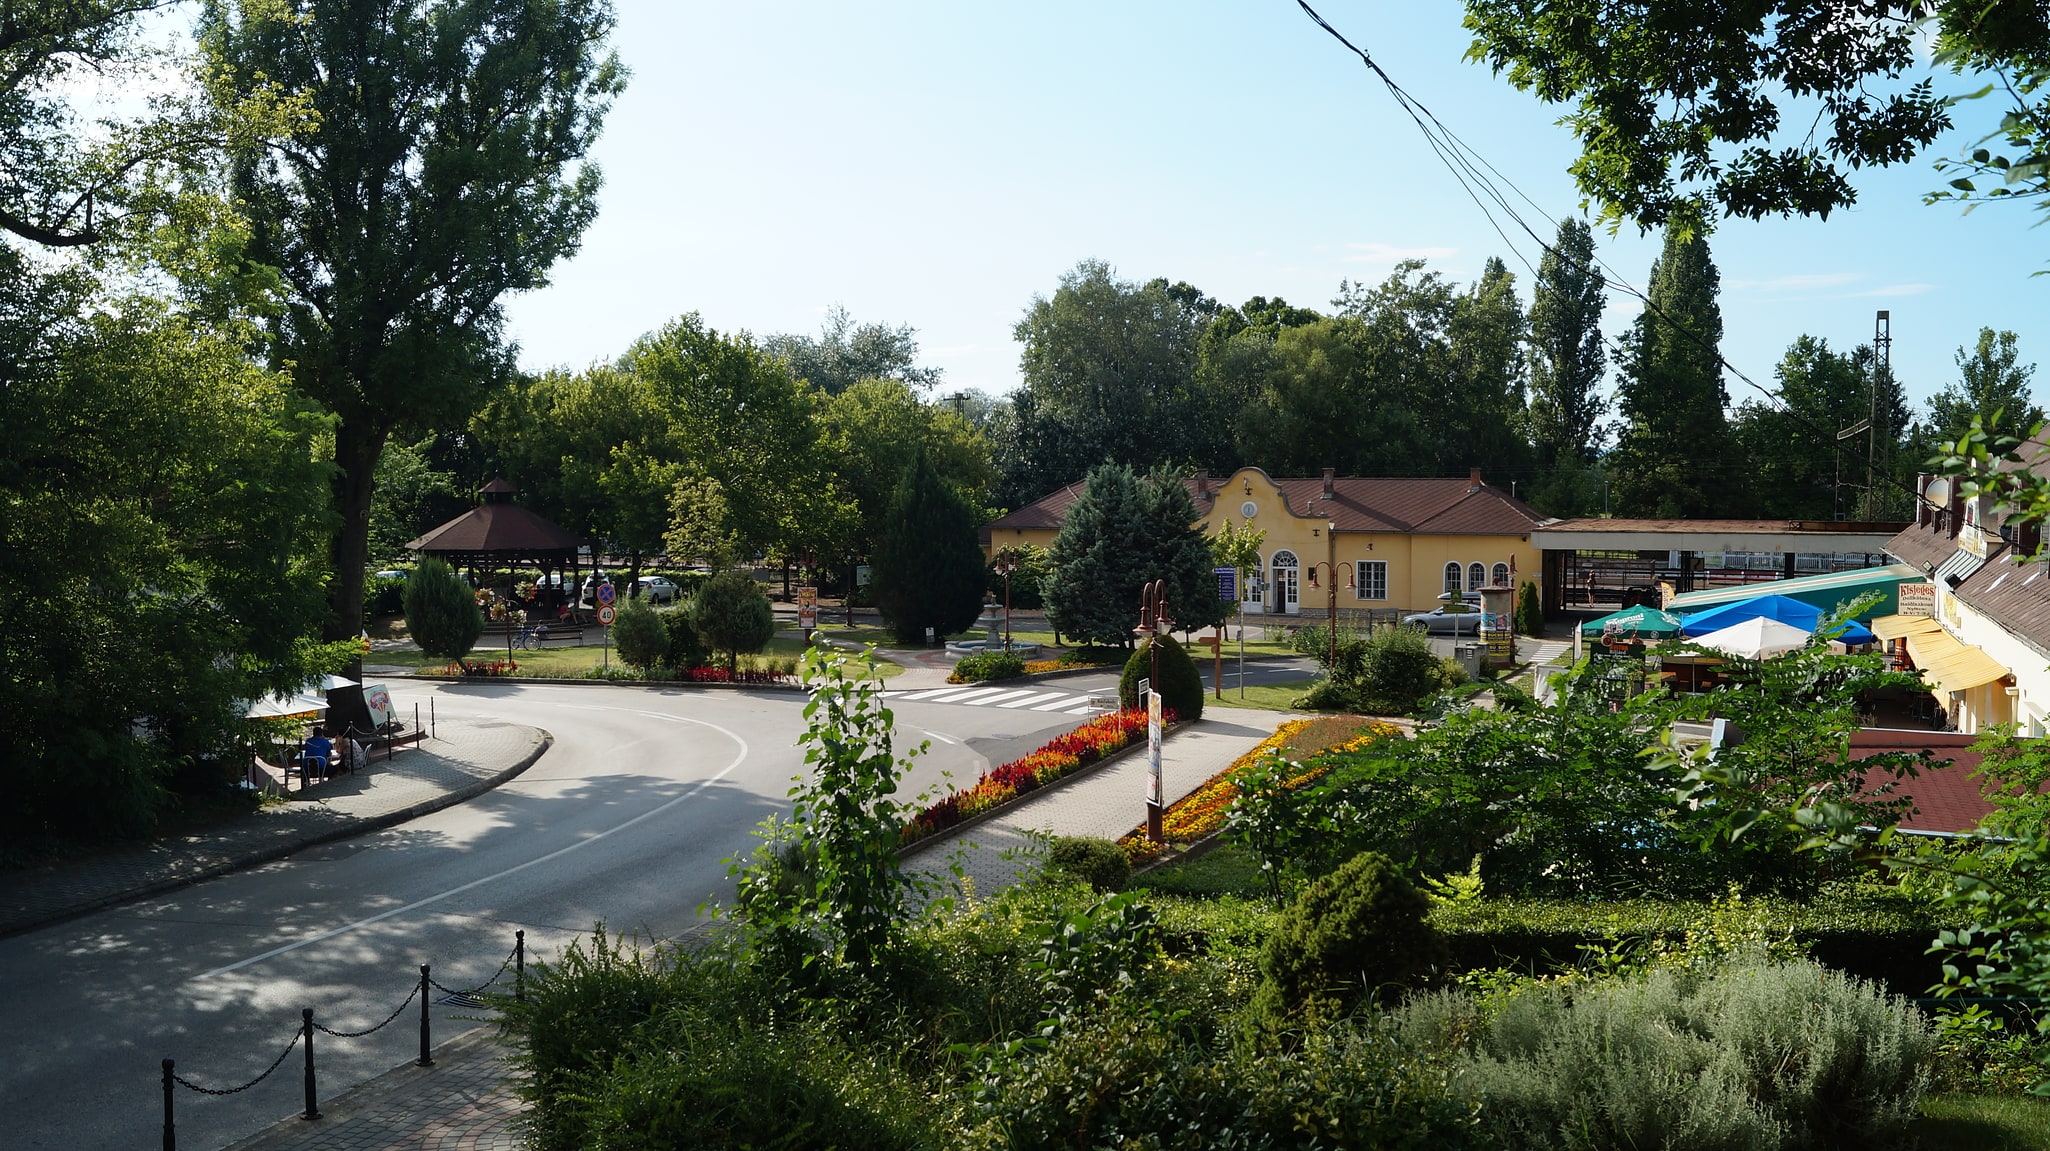 Balatonszemes, Hungary